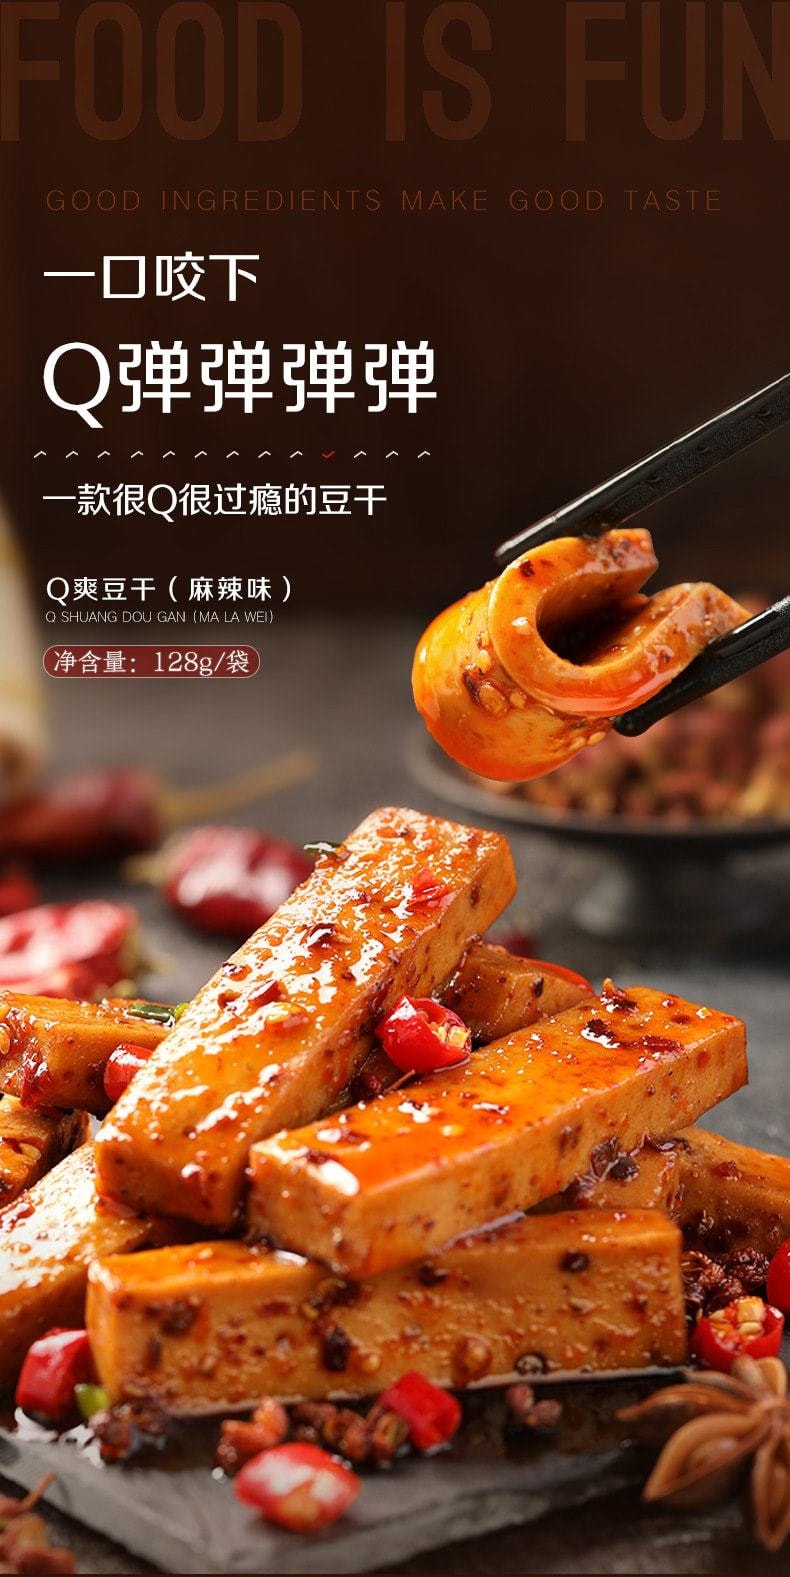 中国 良品铺子 Q爽豆干麻辣味 豆干豆腐干川渝风味休闲小吃 128g/袋